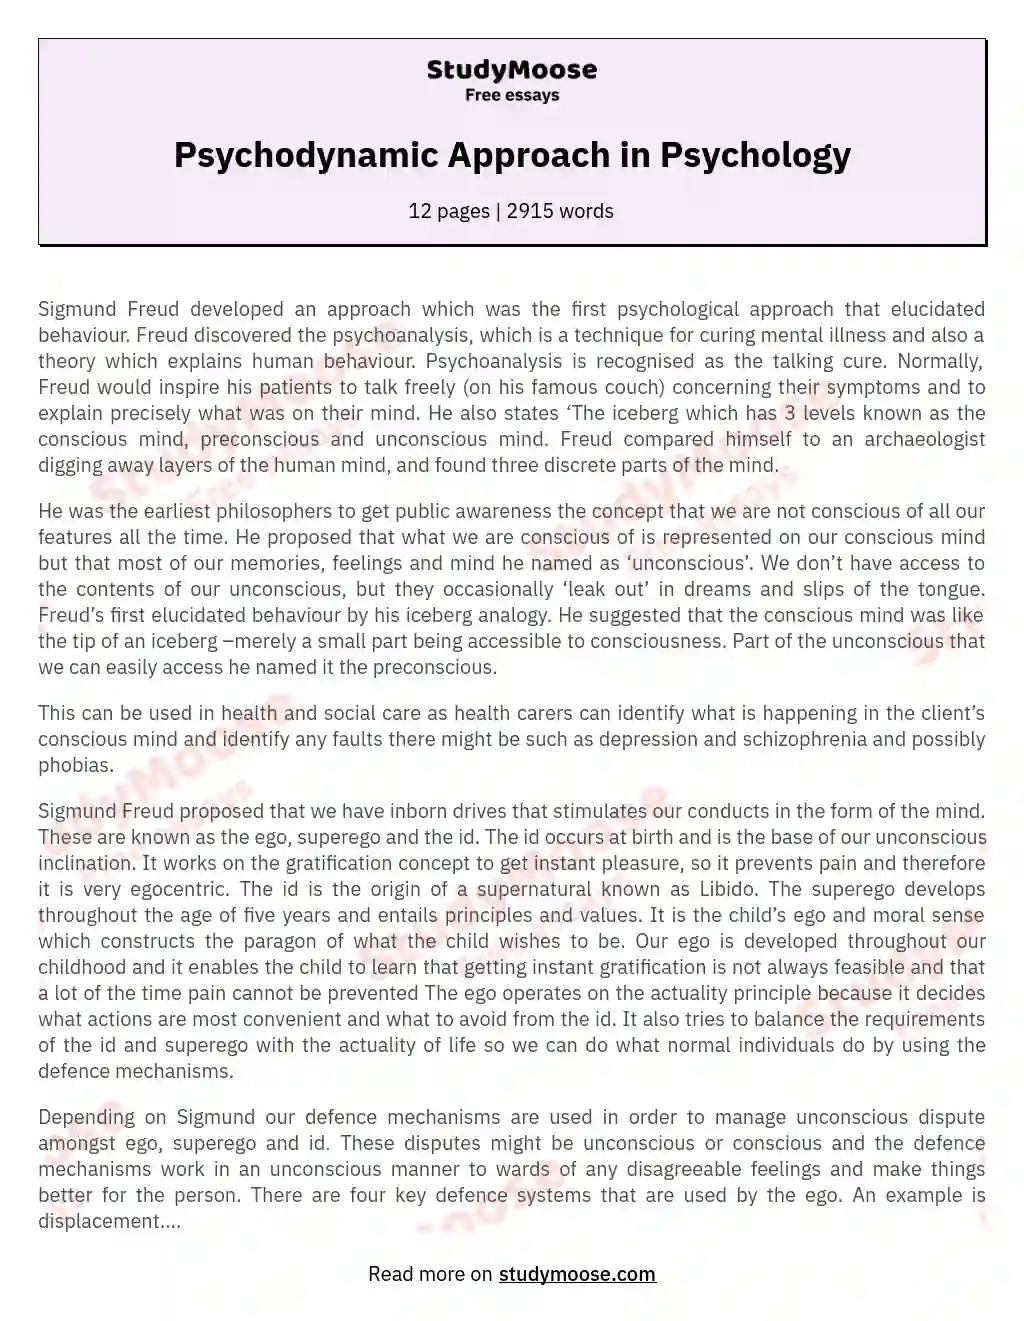 essay on psychodynamic approach